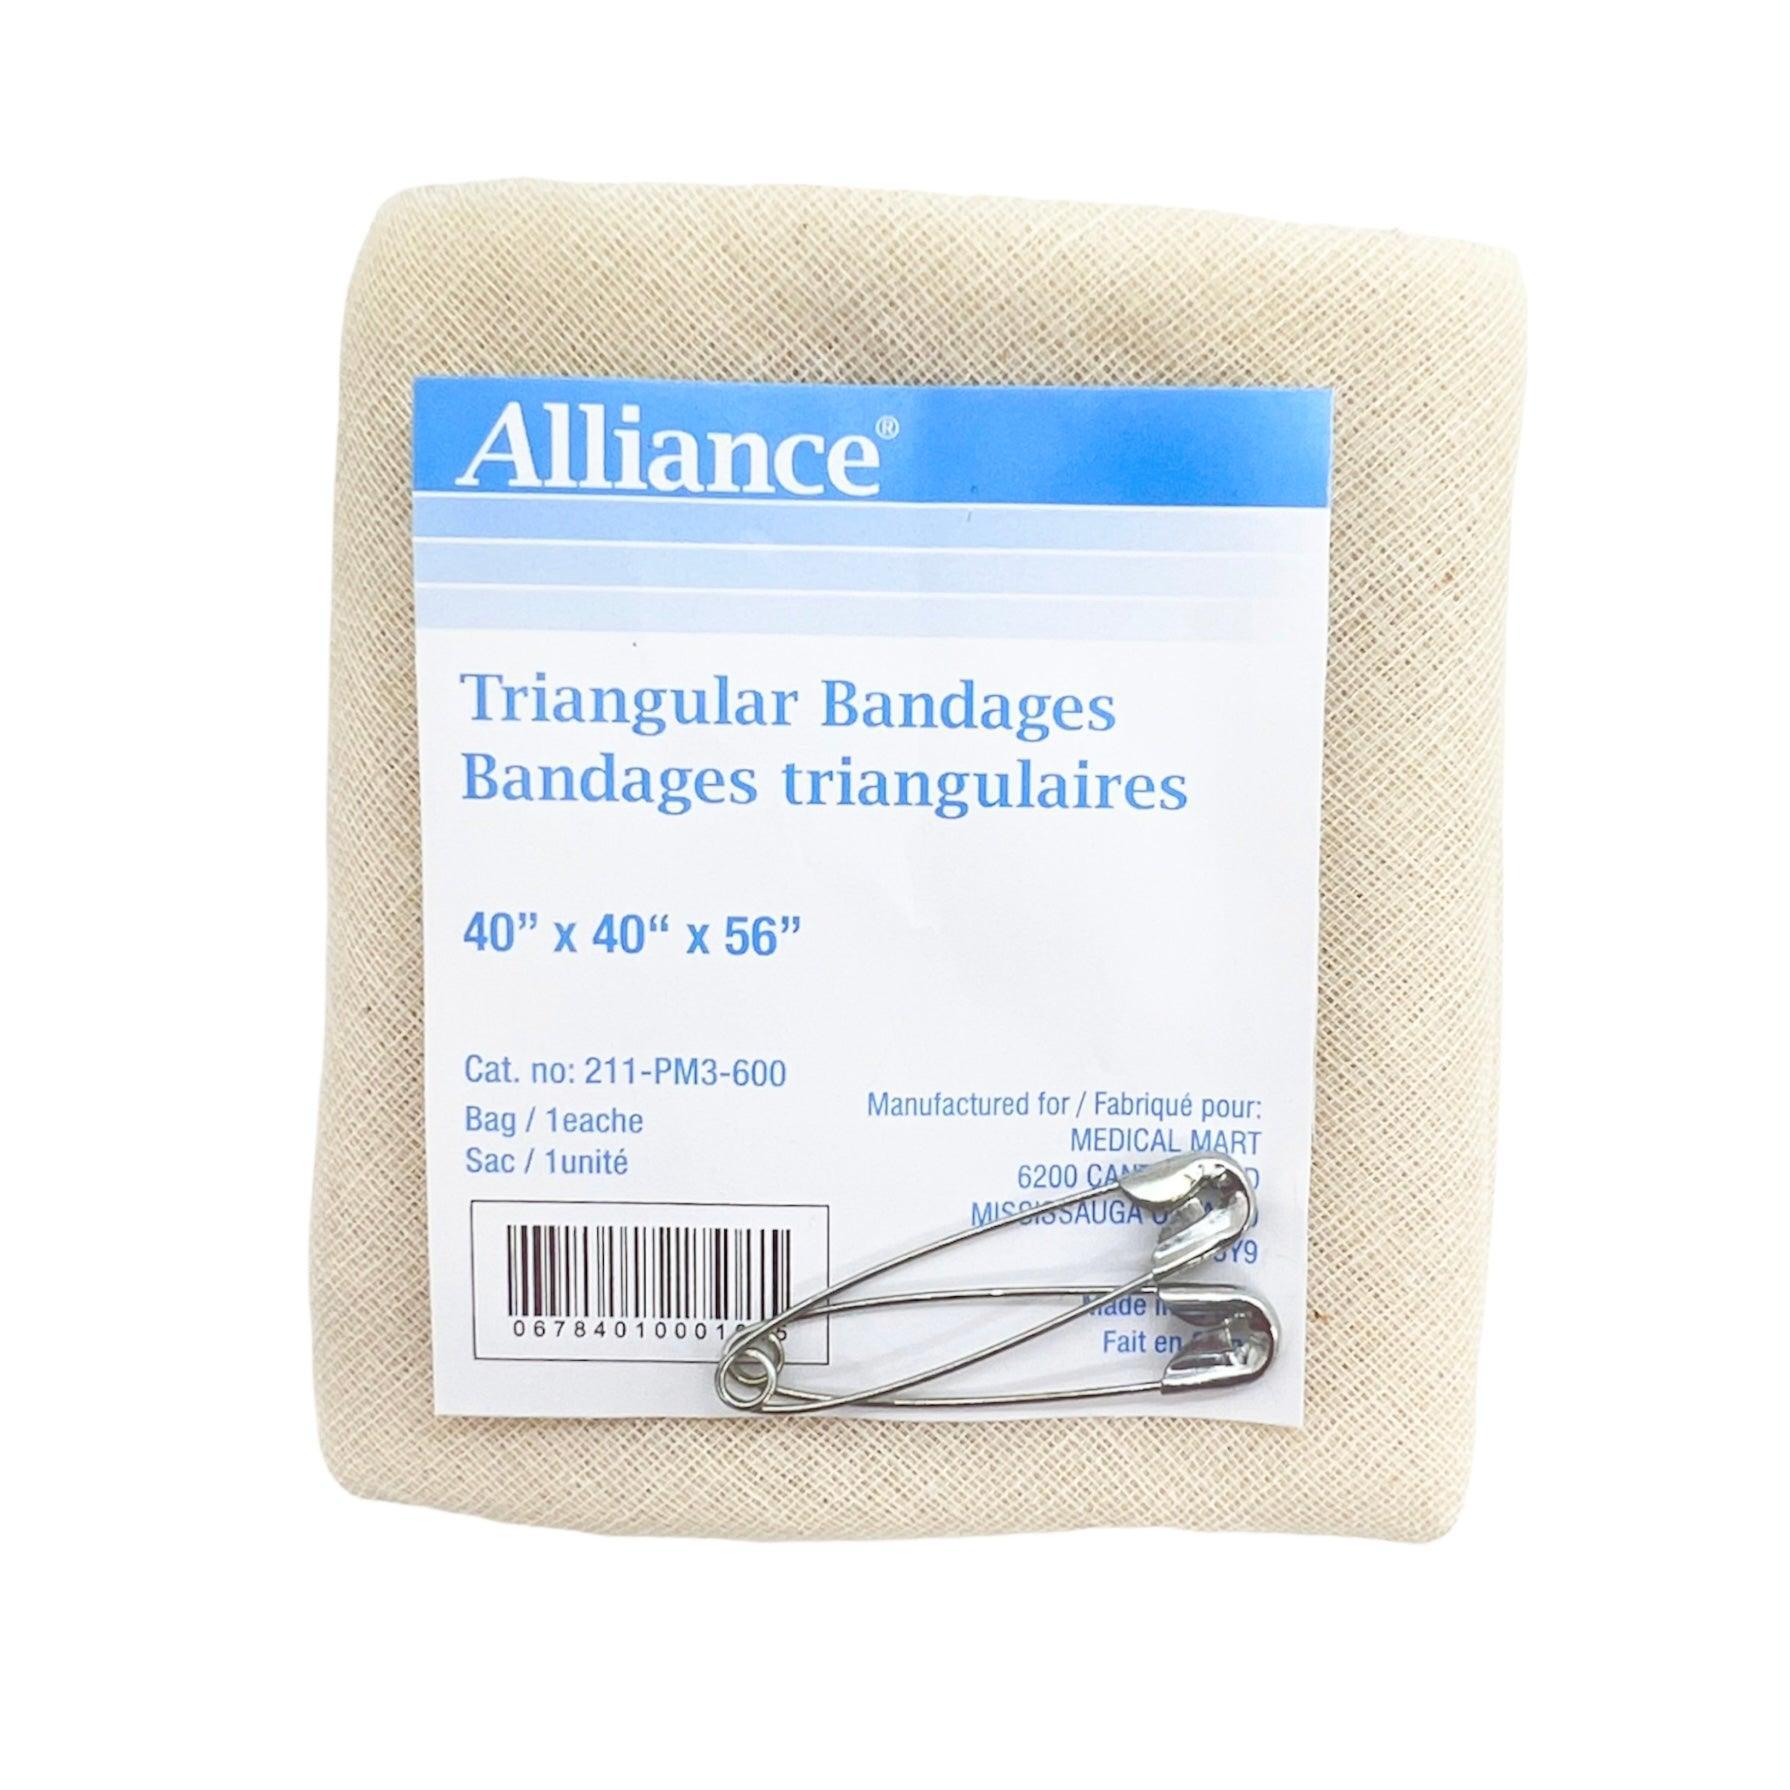 Alliance Triangular Bandage 40"x40"x56" w/ 2 Safety Pins